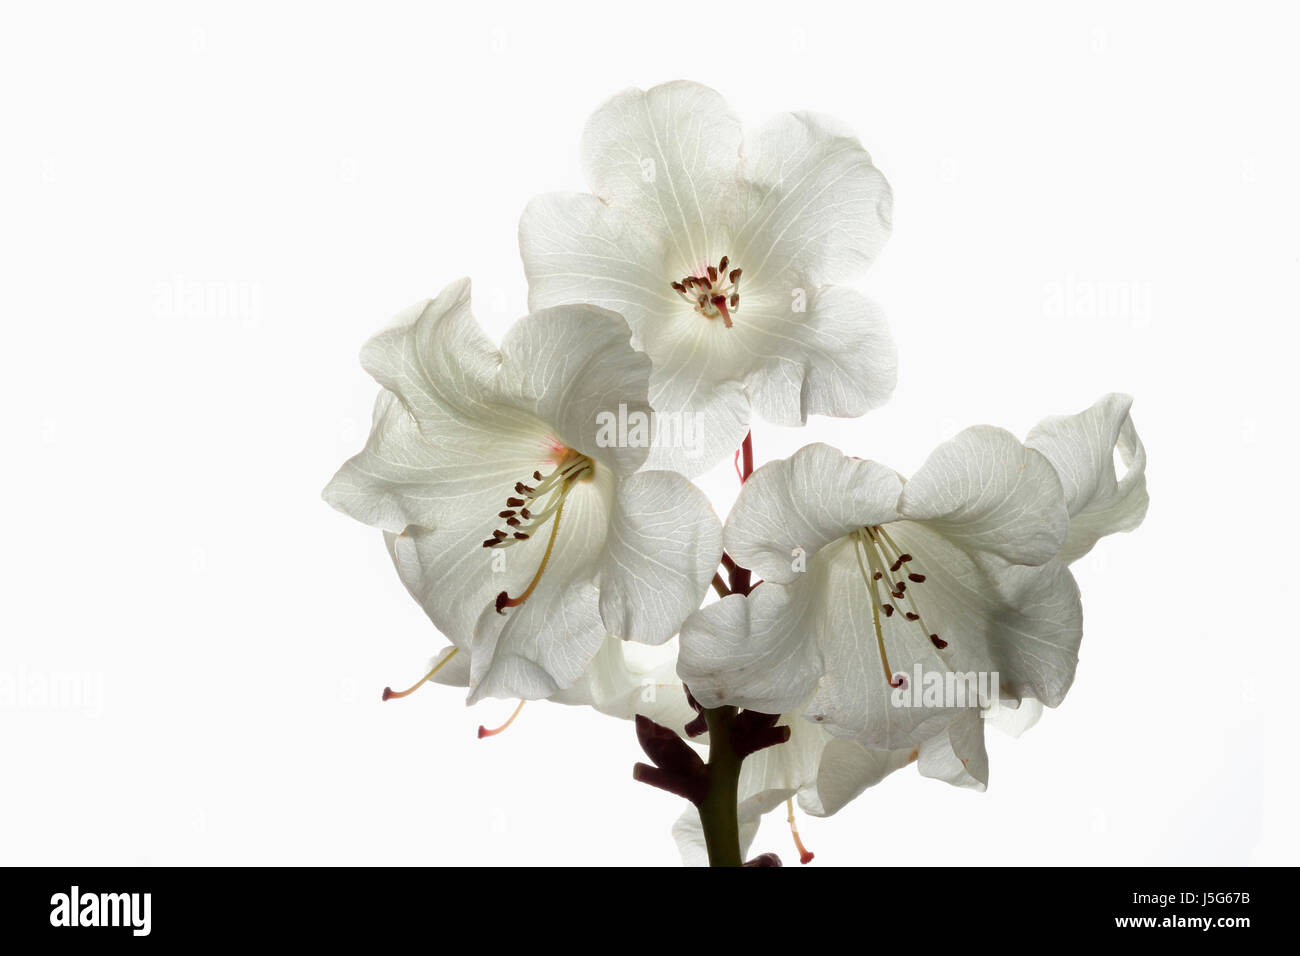 Le rhododendron, Studio shot de fleurs blanches sur une tige contre un fond blanc, pur. Banque D'Images